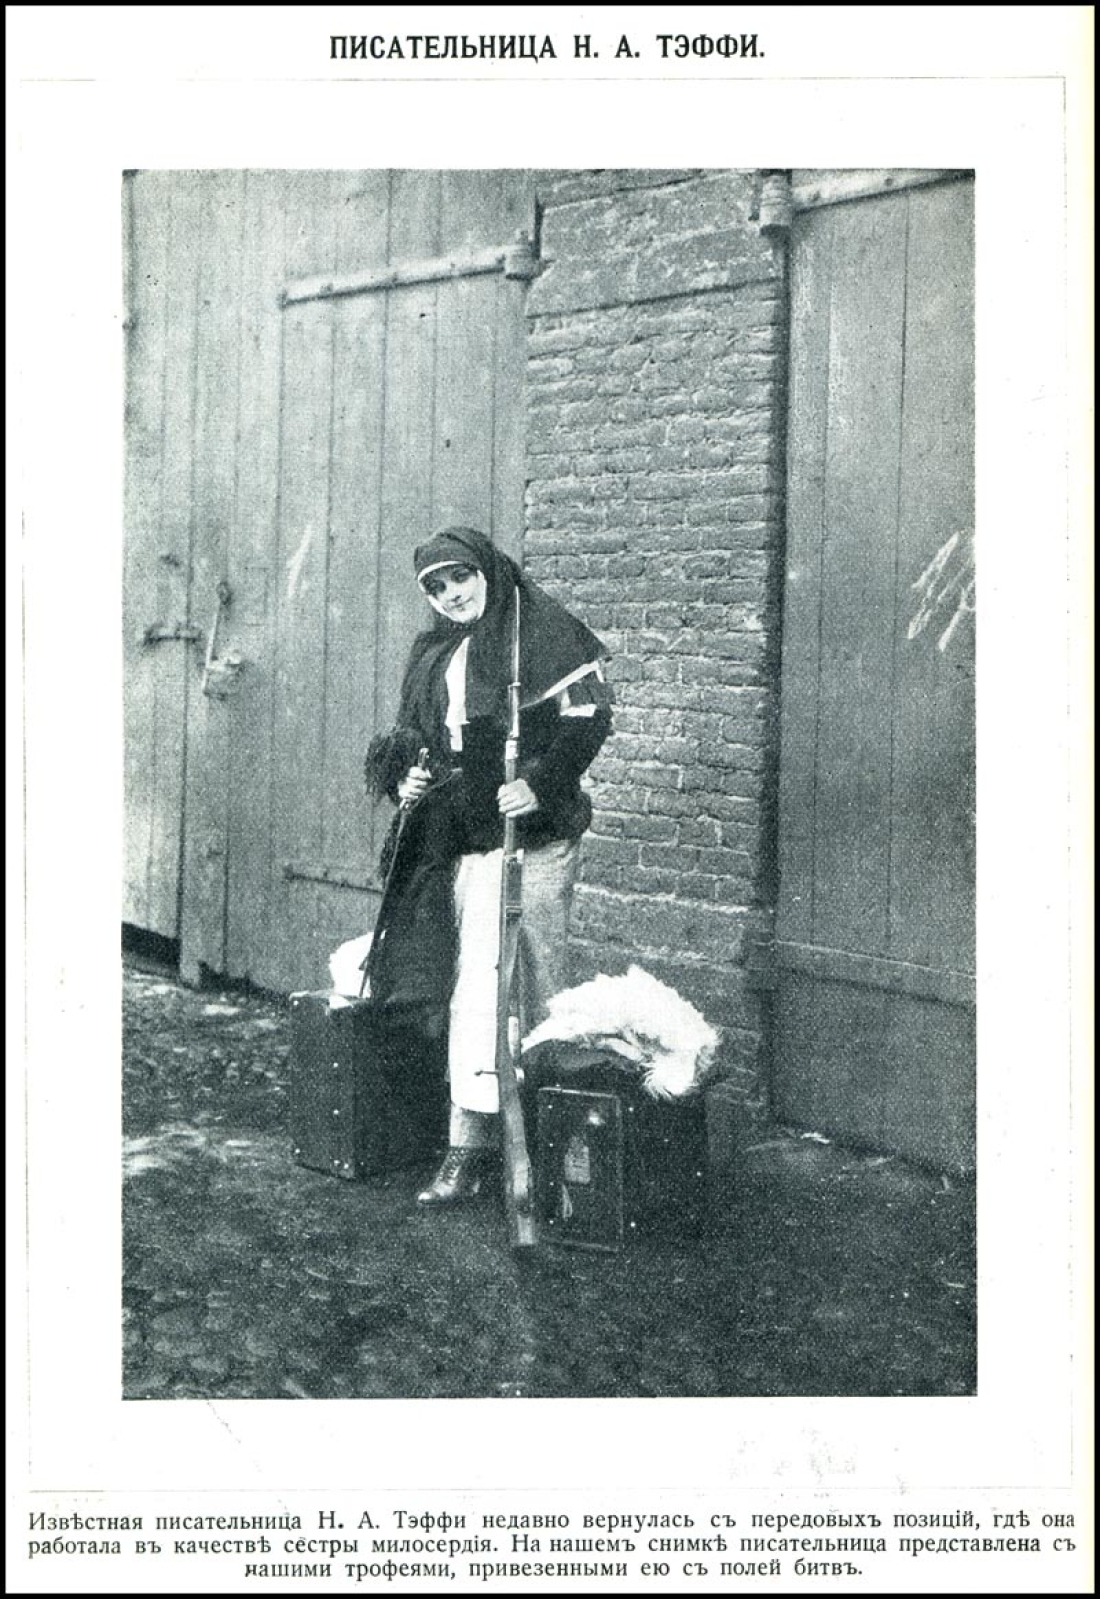      Η Τέφι, στη διάρκεια παράστασης. Φωτογραφία δημοσιευμένη στο περιοδικό Άργκους, το 1915.  